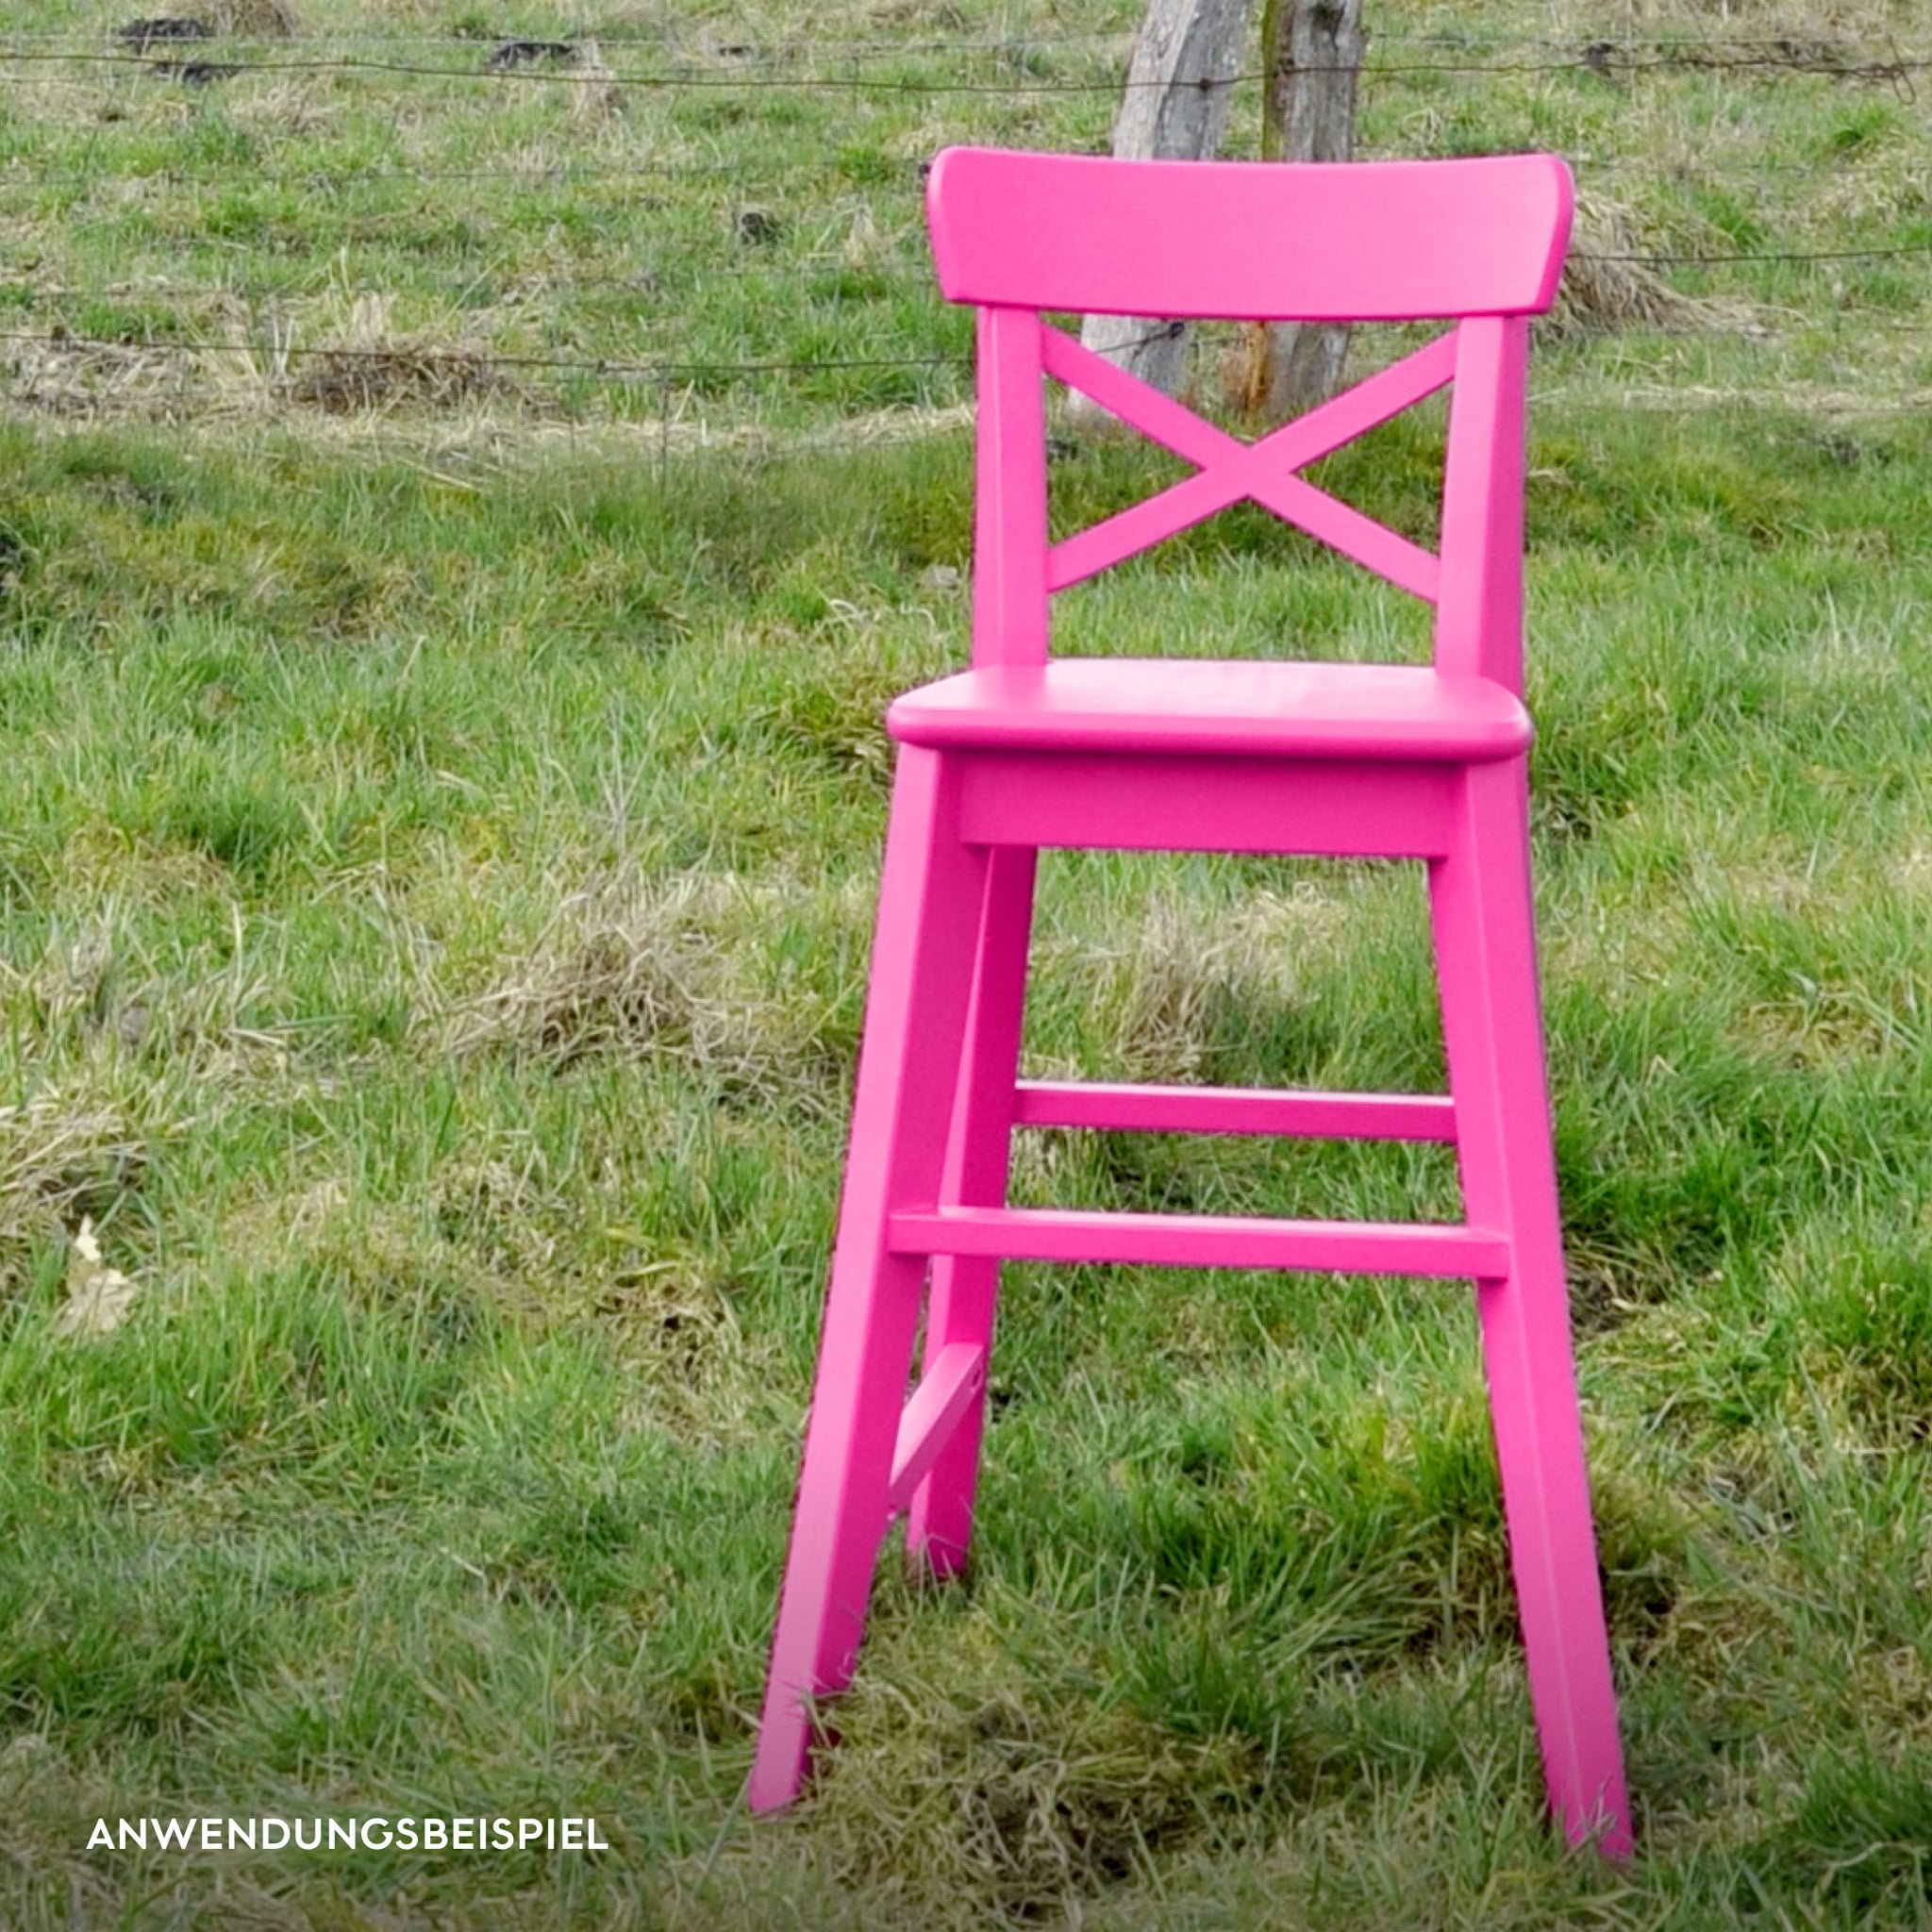 Pinke Holzfarbe im Farbton der Drachenfrucht, „Pitaya“ für ausgefallene DIY-Möbel und Wohninspiration mit Anwendungsbeispiel Stuhl